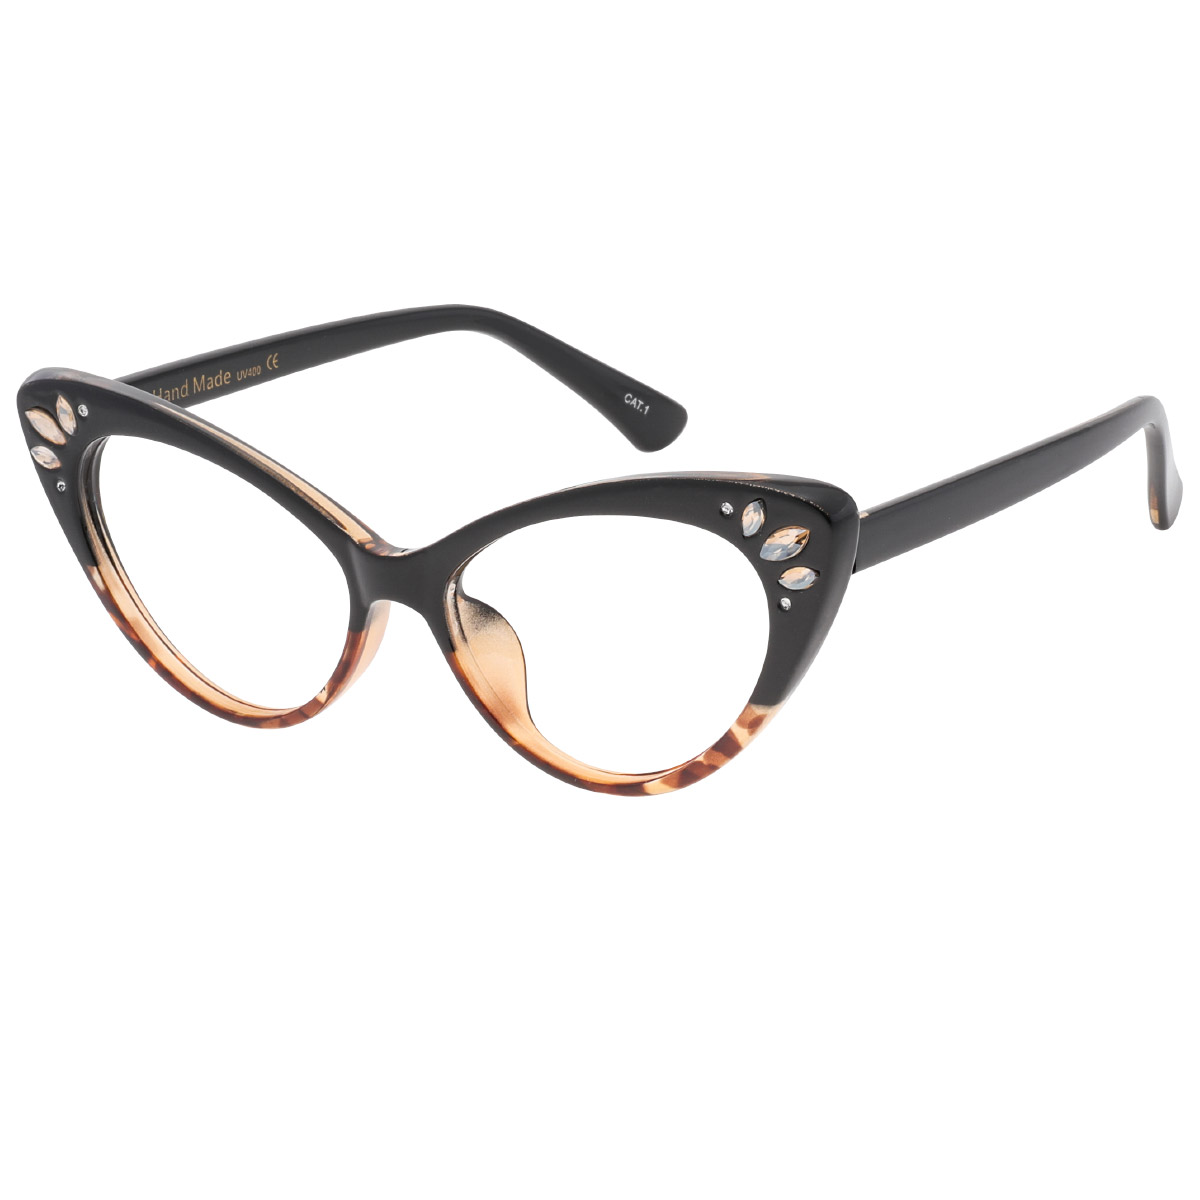 Celaenae - Cat-eye  Reading Glasses for Women